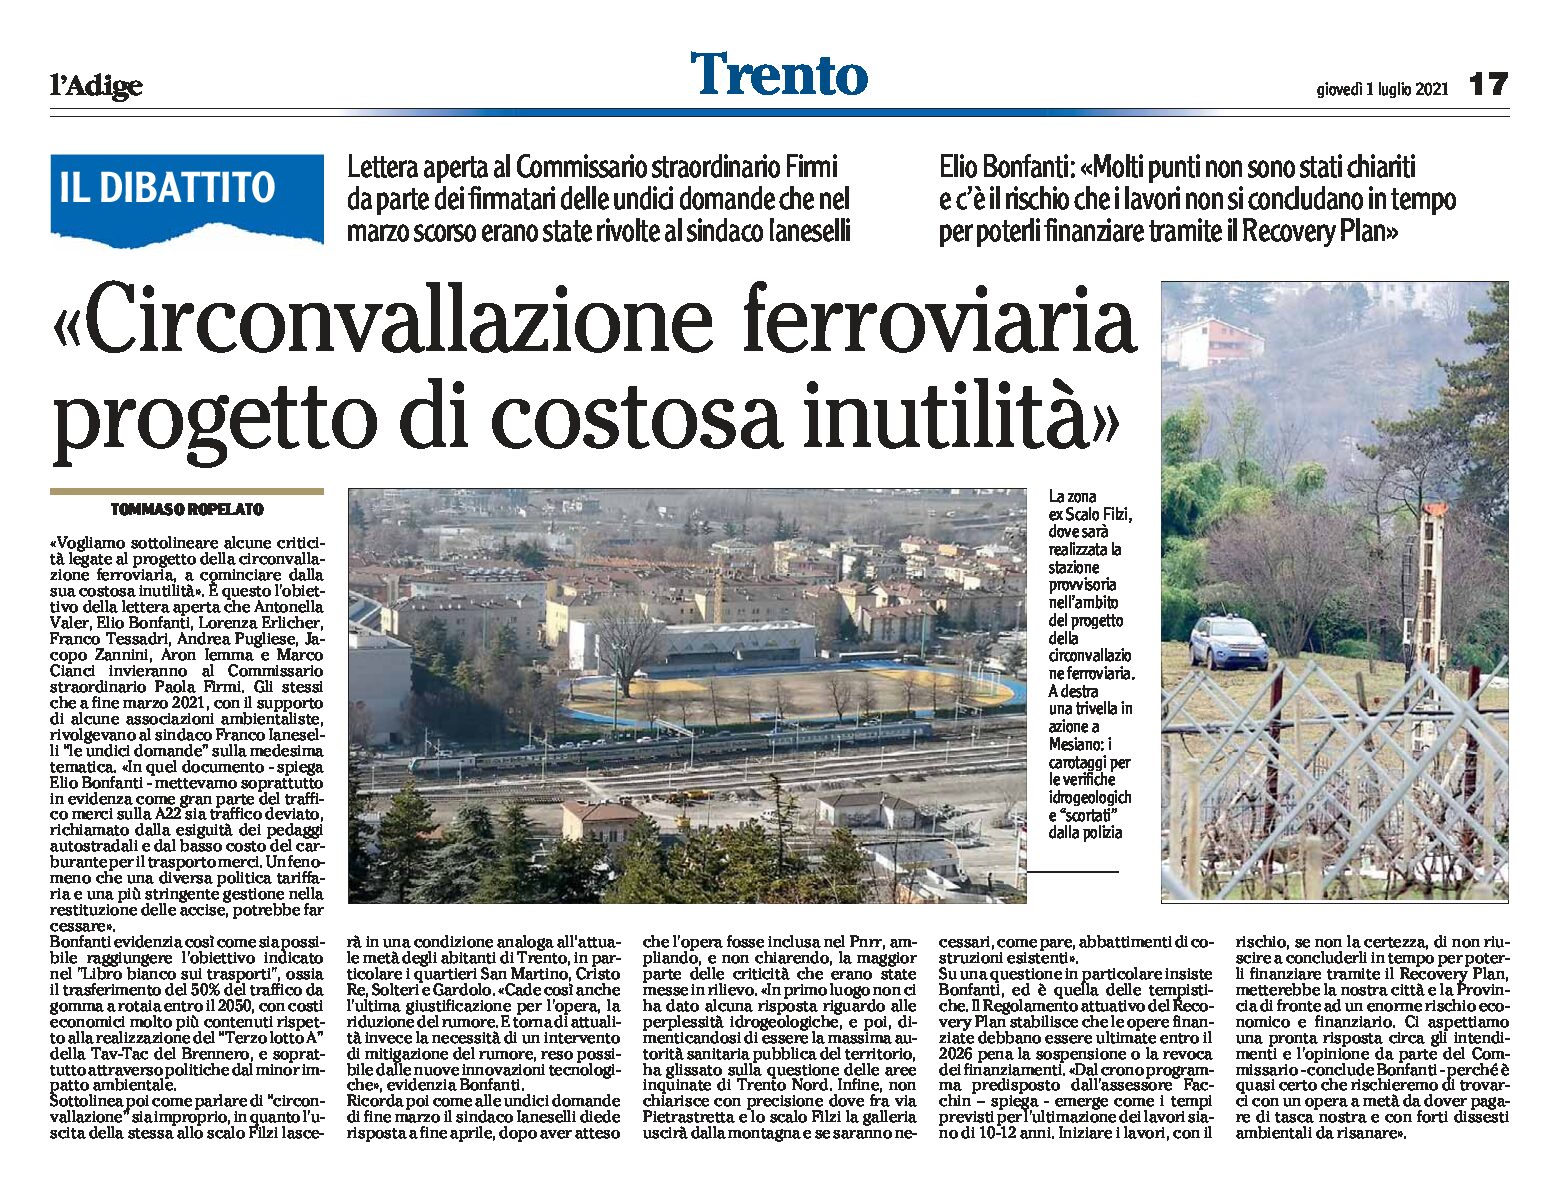 Trento, il dibattito: circonvallazione ferroviaria, progetto di costosa inutilità